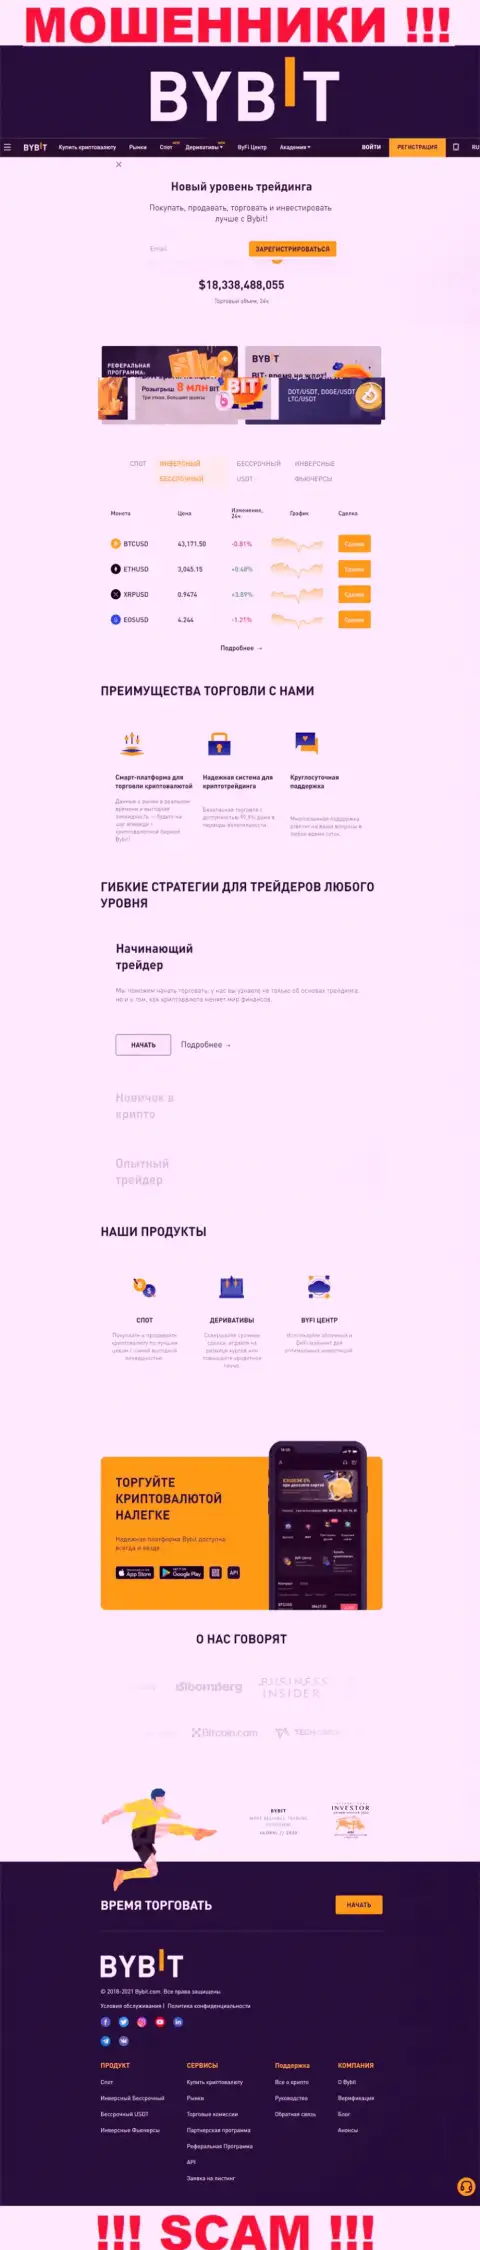 Главная страница официального web-сервиса мошенников ByBit